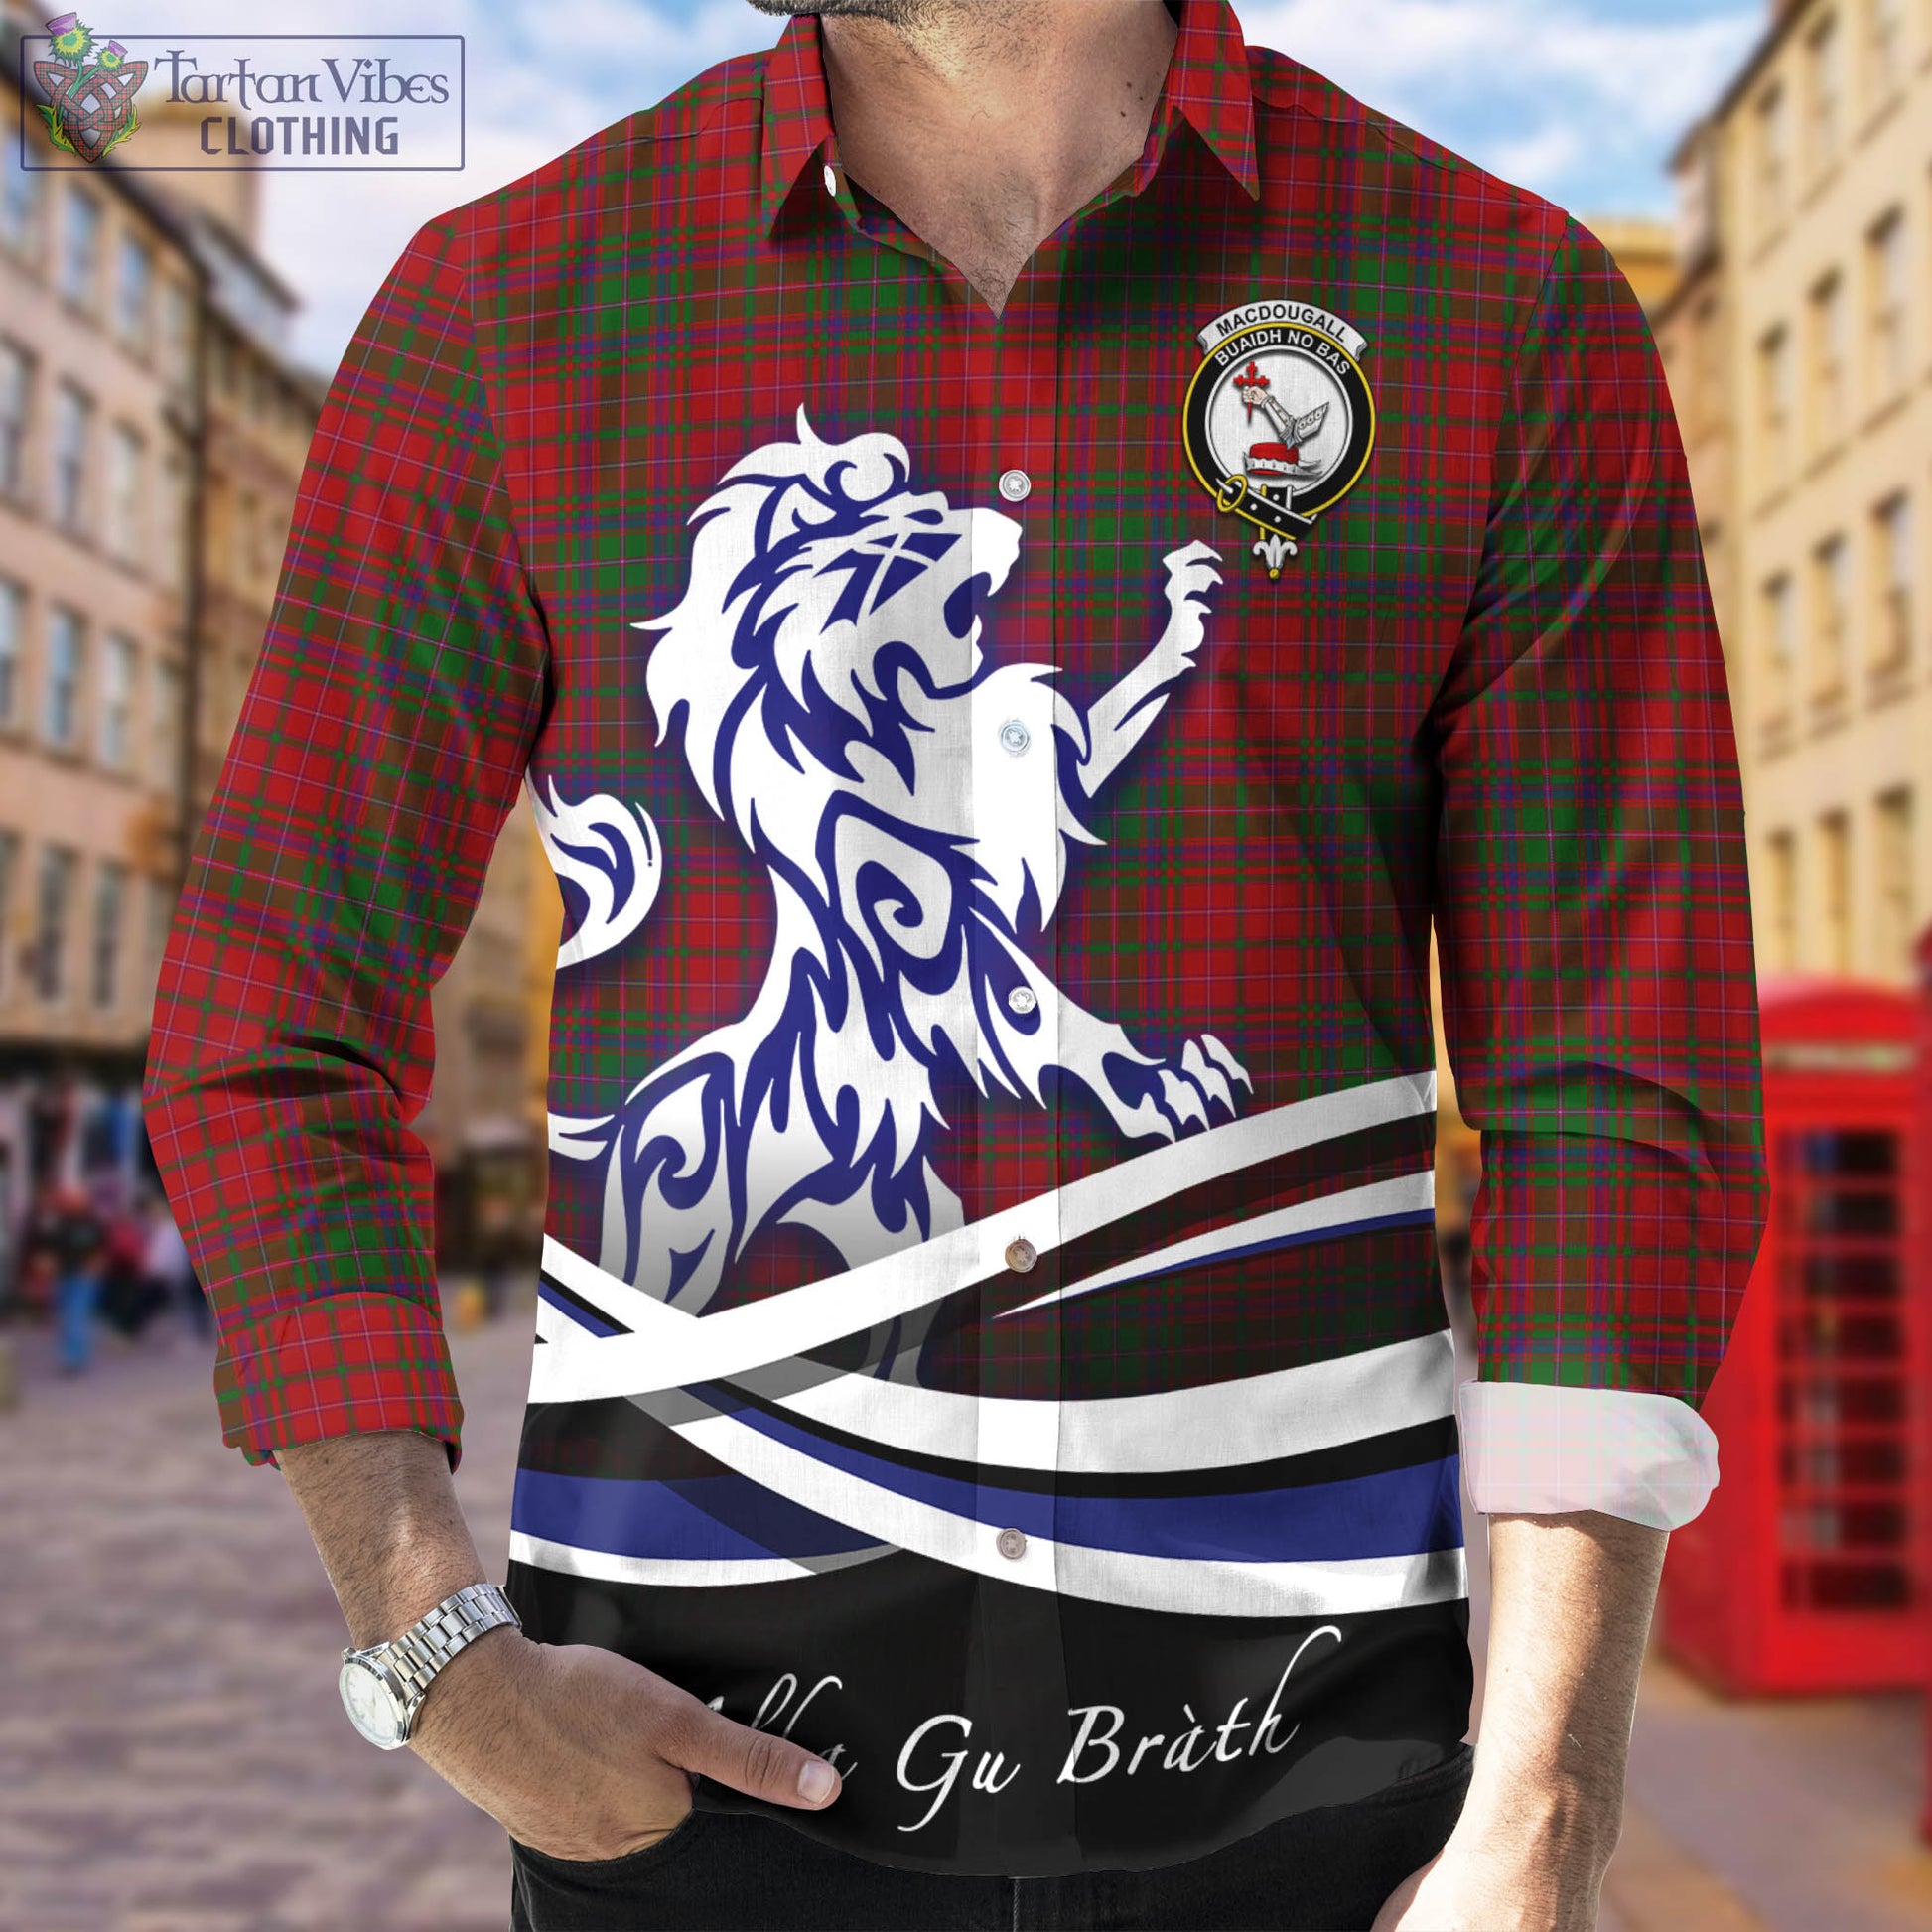 macdougall-tartan-long-sleeve-button-up-shirt-with-alba-gu-brath-regal-lion-emblem